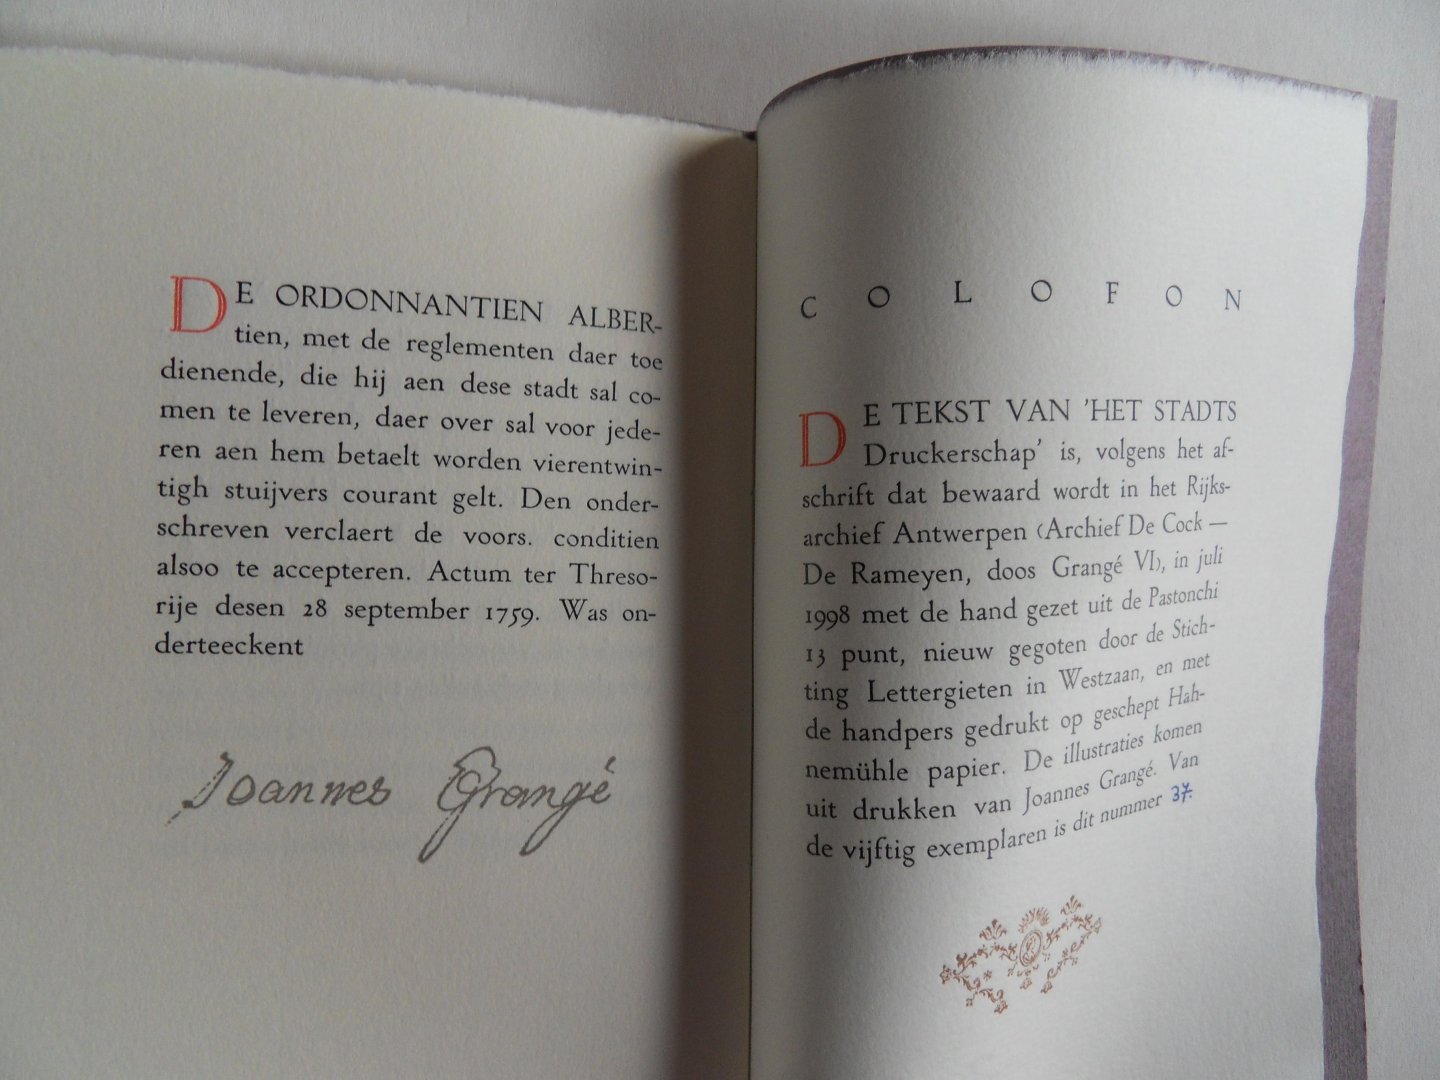 Grangé, Joannes. [ tekst over zijn benoeming tot stadsdrukker ]. - Het Antwerpse Stadts Druckerschap toegekend aan Joannes Grangé op 28 september 1759.  [ Genummerd exemplaar 37 / 50 ].